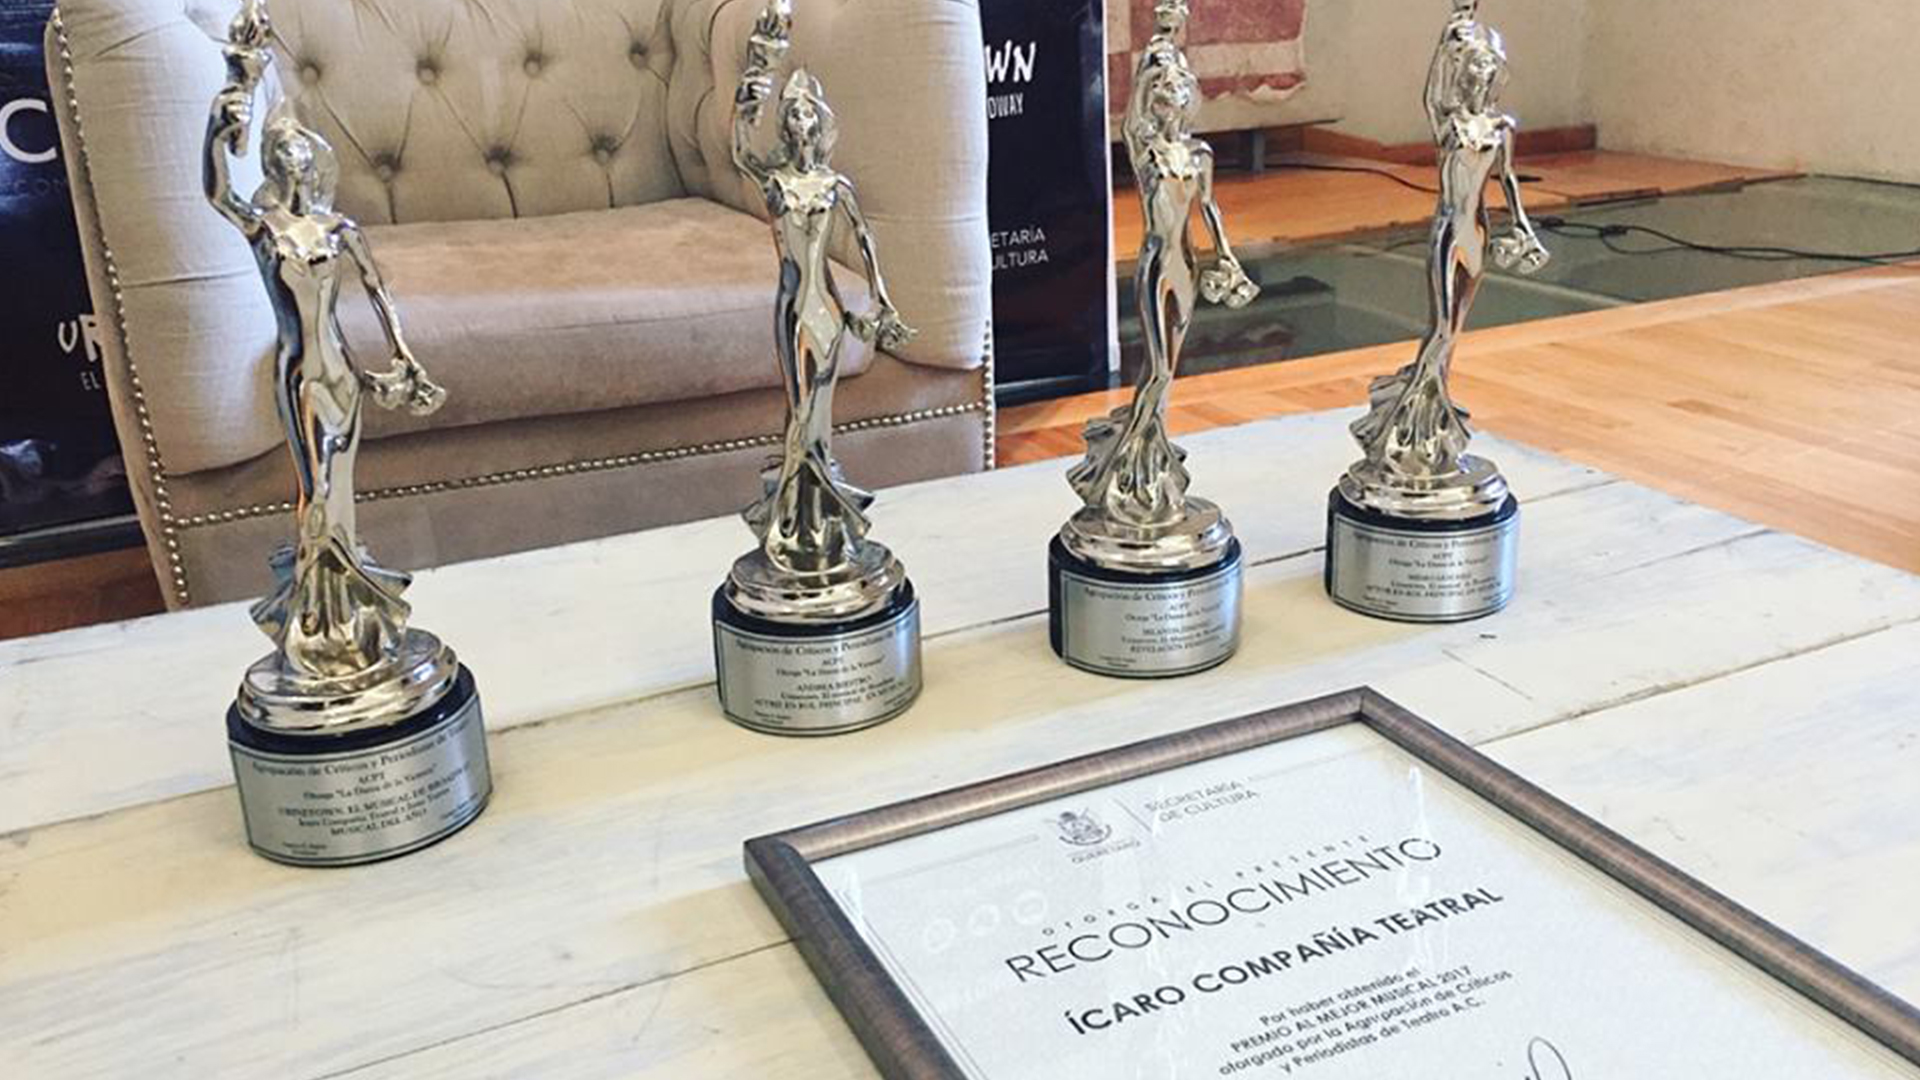 Premios y reconocimientos otorgados a Urinetown e Ícaro Compañía teatral